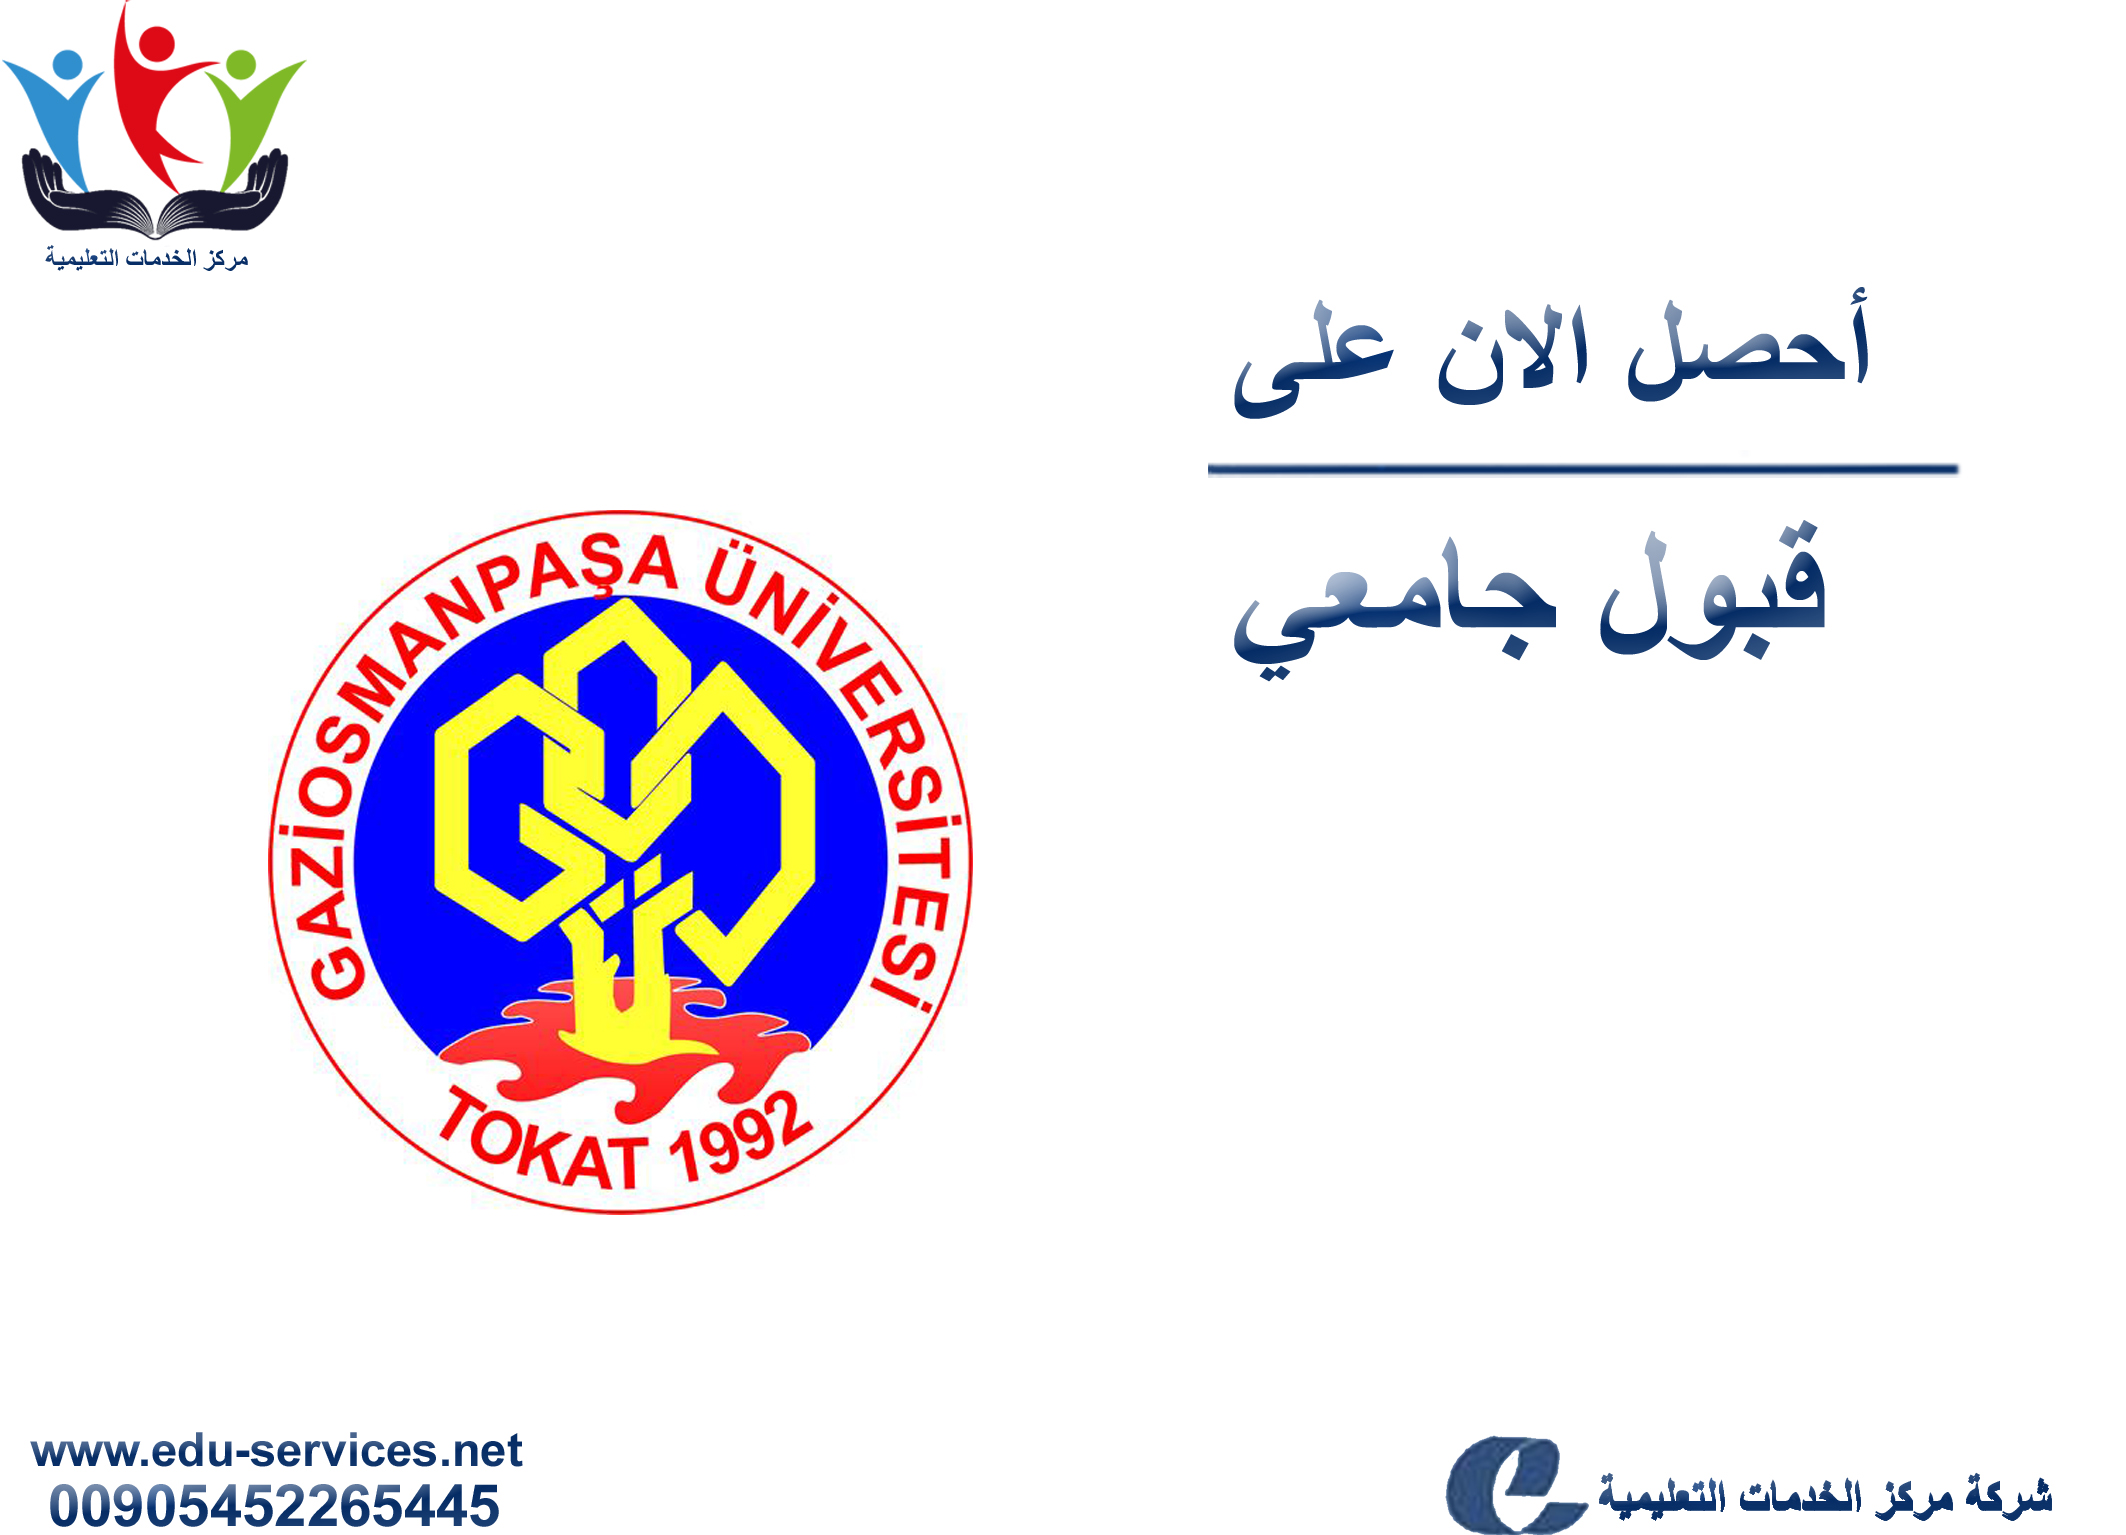 افتتاح التسجيل في جامعة عثمان باشا للعام 2018-2019